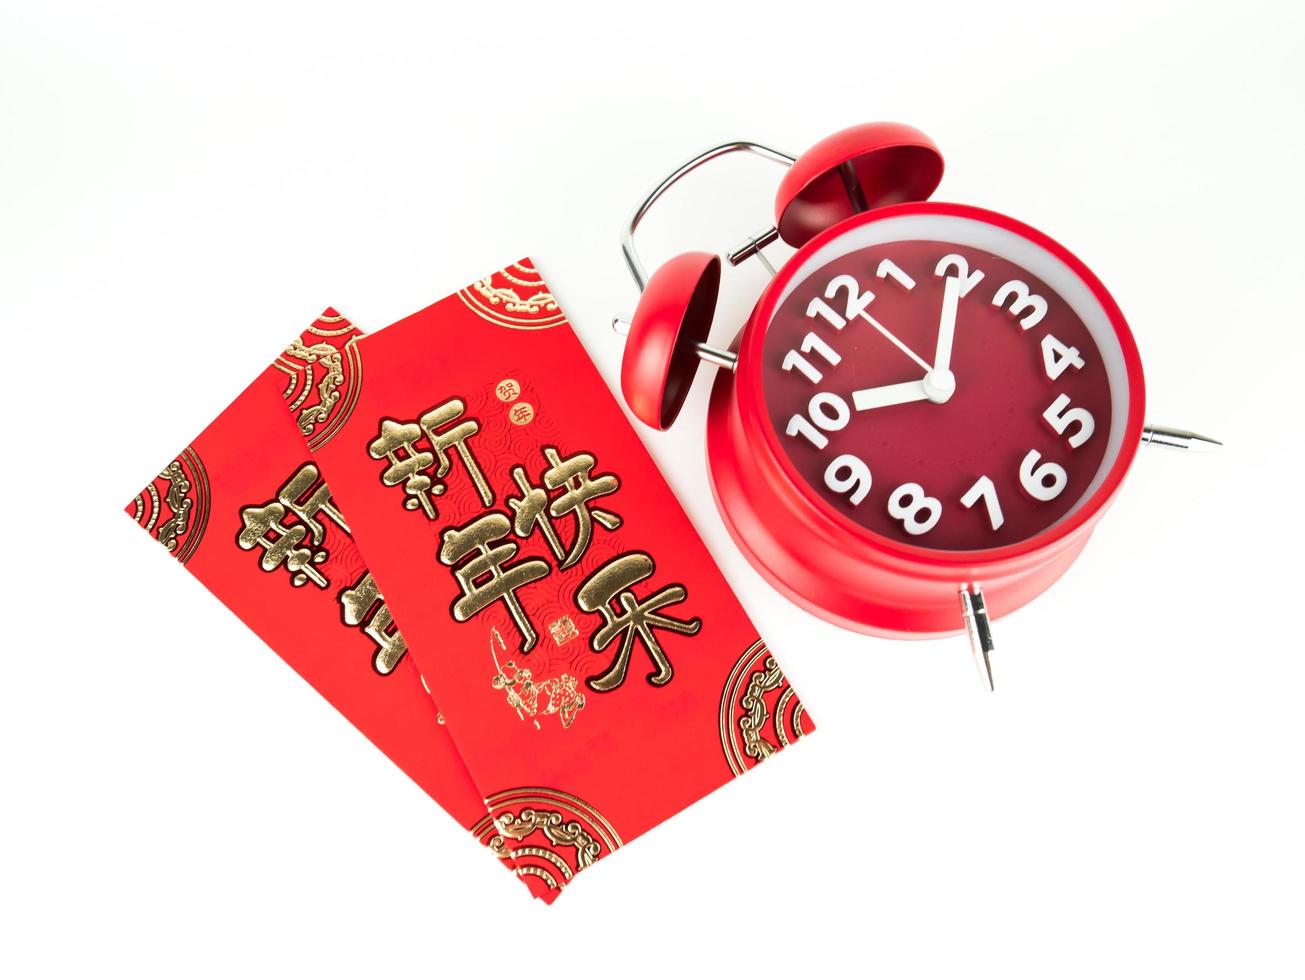 enveloppe rouge isolée sur fond blanc avec réveil rouge pour cadeau nouvel an chinois. texte chinois sur enveloppe signifiant joyeux nouvel an chinois photo